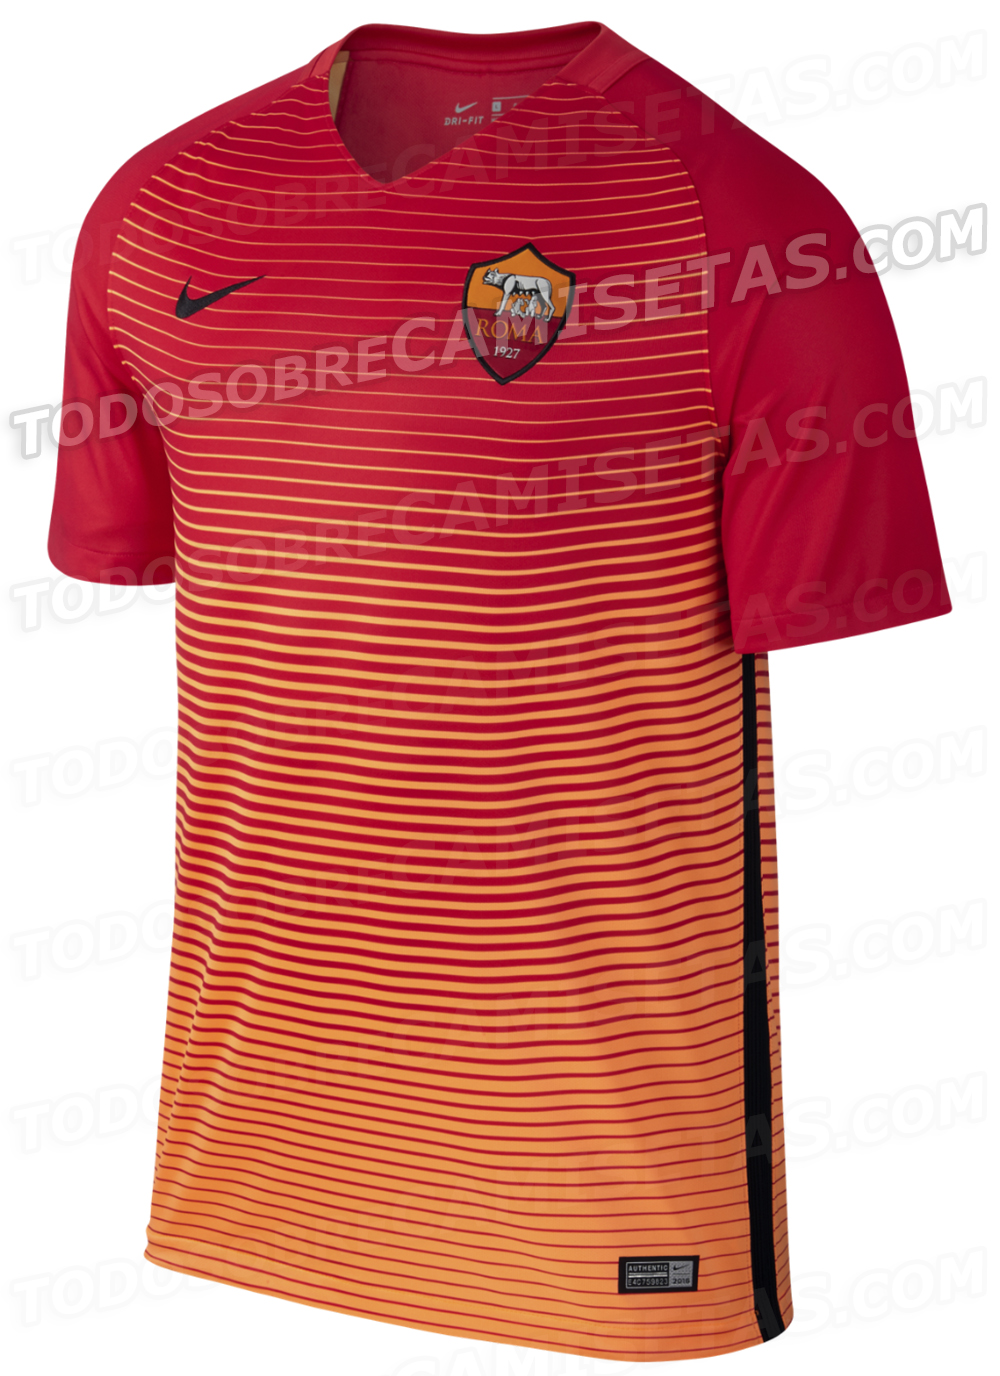 AS Roma 2016-17 Nike Third Kit LEAKED